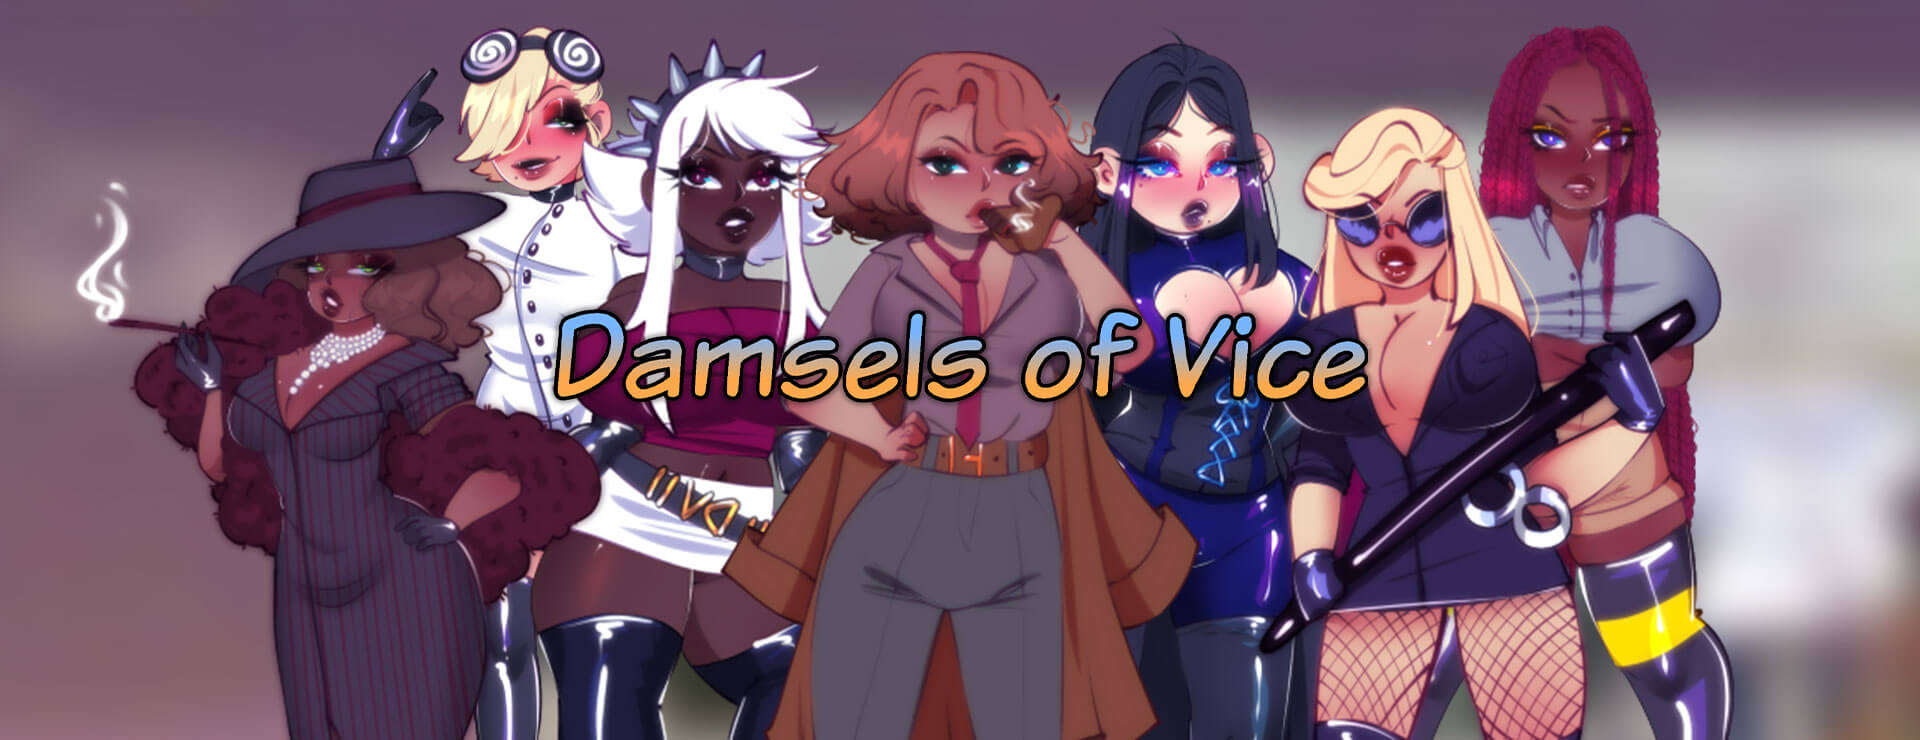 Damsels of Vice - RPG Game